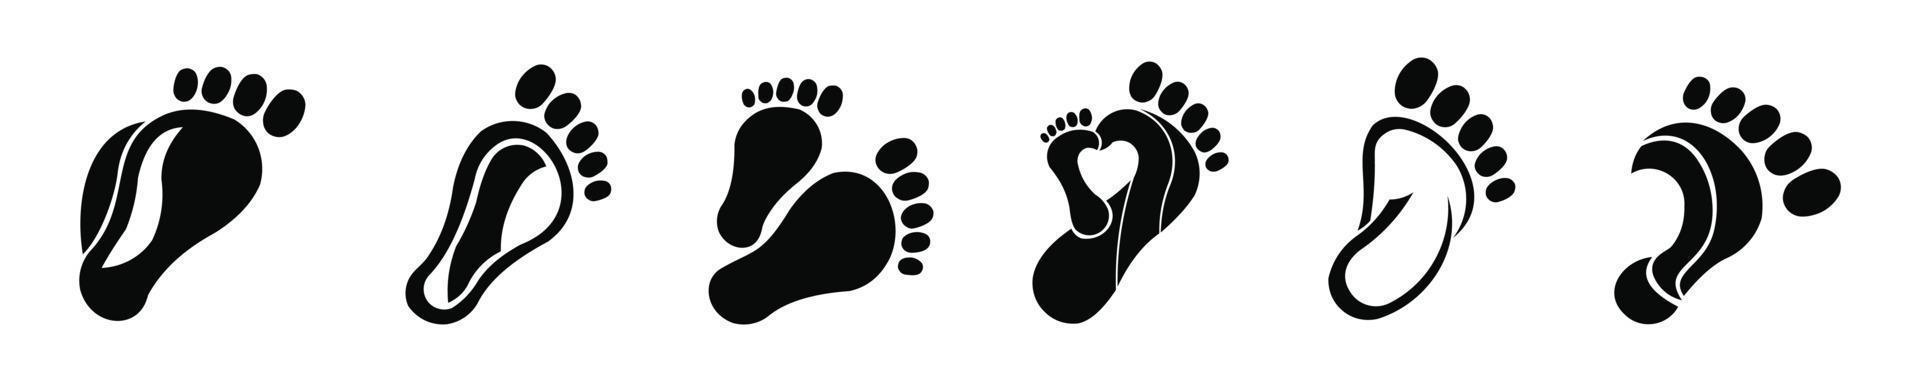 linker- en rechtervoetzolen contourillustratie voor biomechanica, schoeisel, realistische contour in cartoonstijl. vector inspiratie logo voet